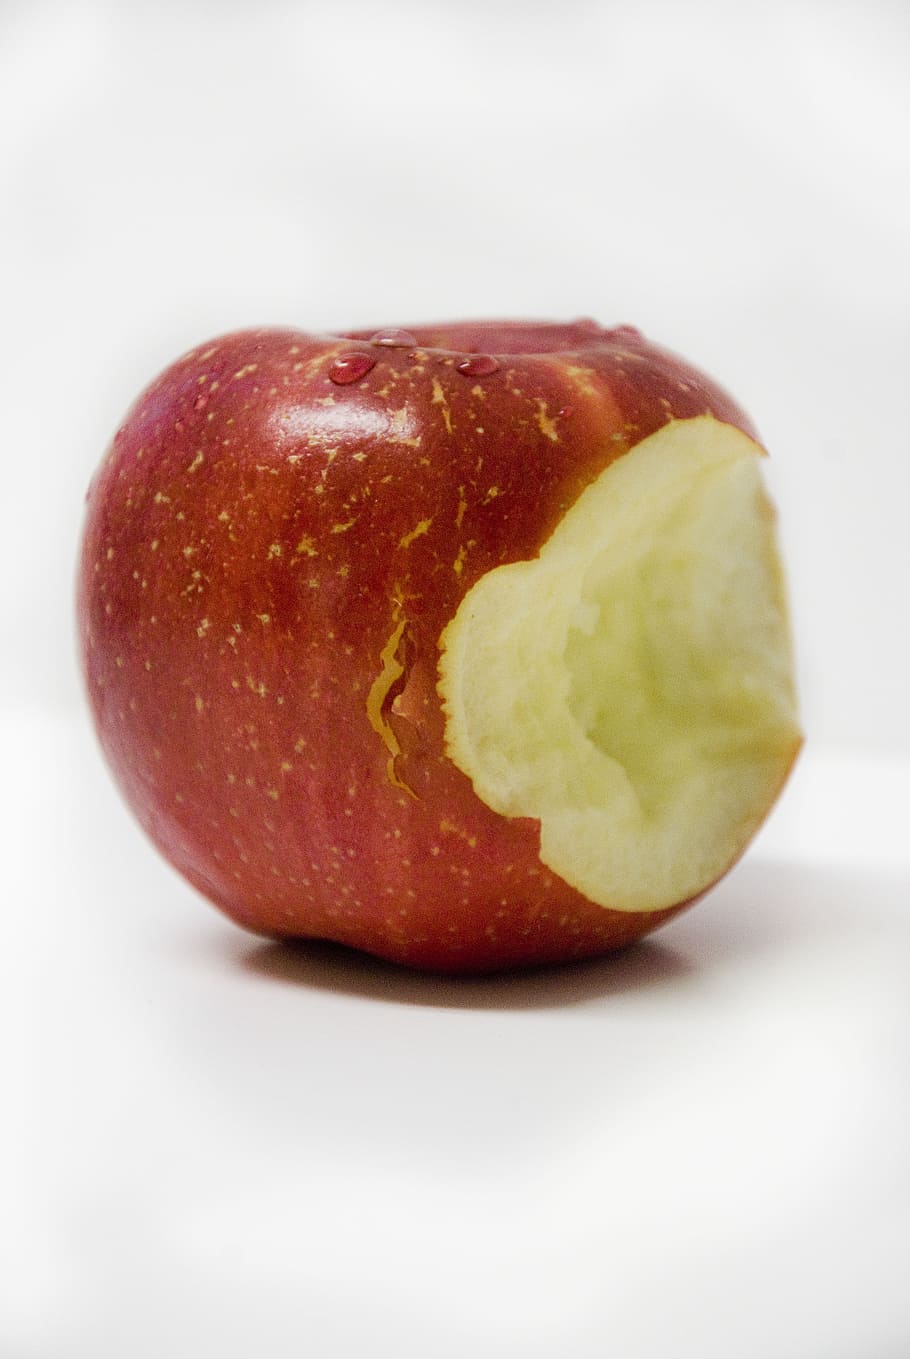 mordido, vermelho, maçã, branco, tabl, maçã vermelha, mordida, fruta, comida, saudável